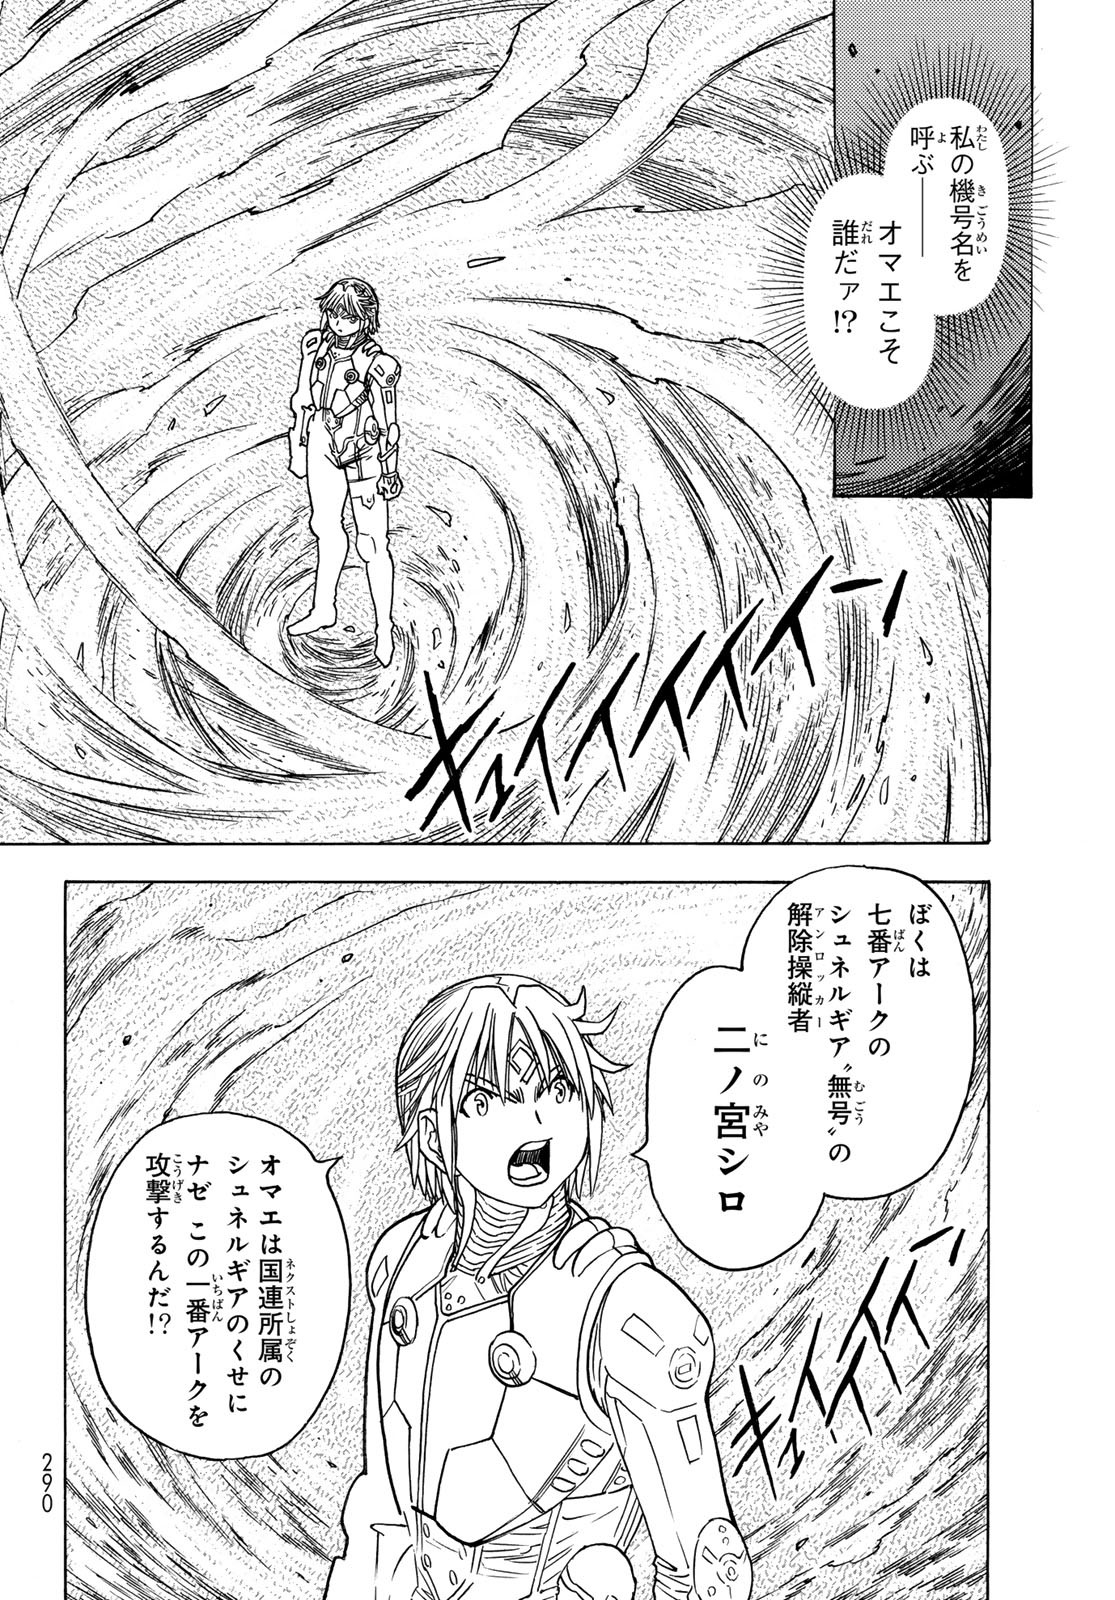 Mugou no Schnell Gear: Chikyuugai Kisouka AI - Chapter 51 - Page 6